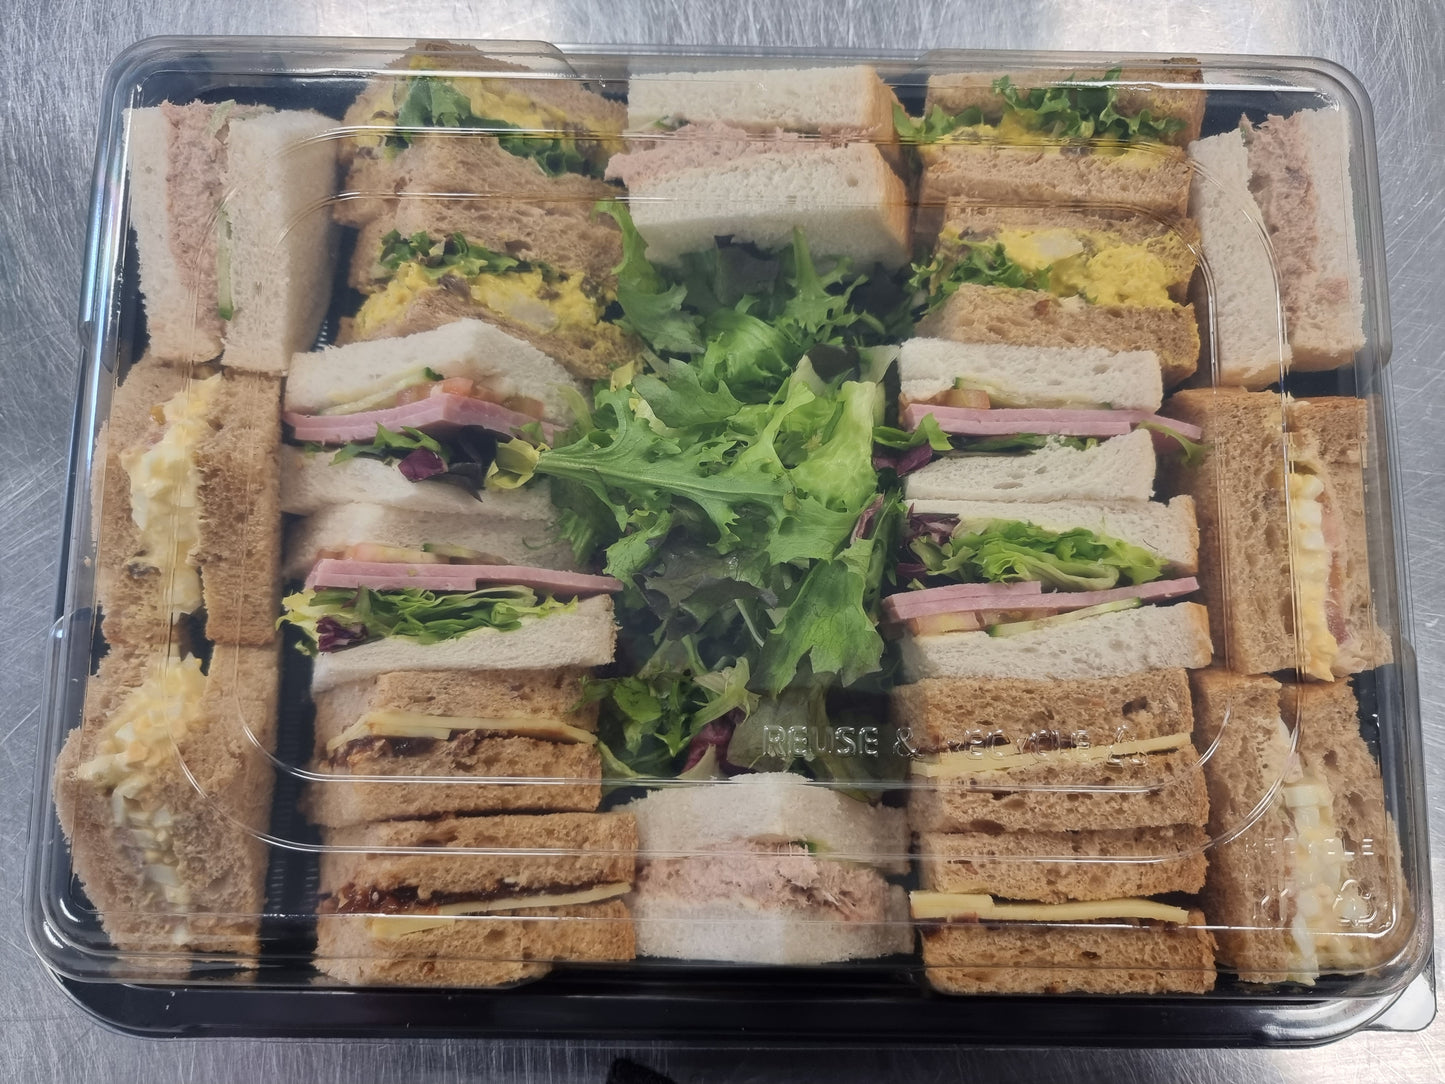 Sandwich Platter serves 10-12